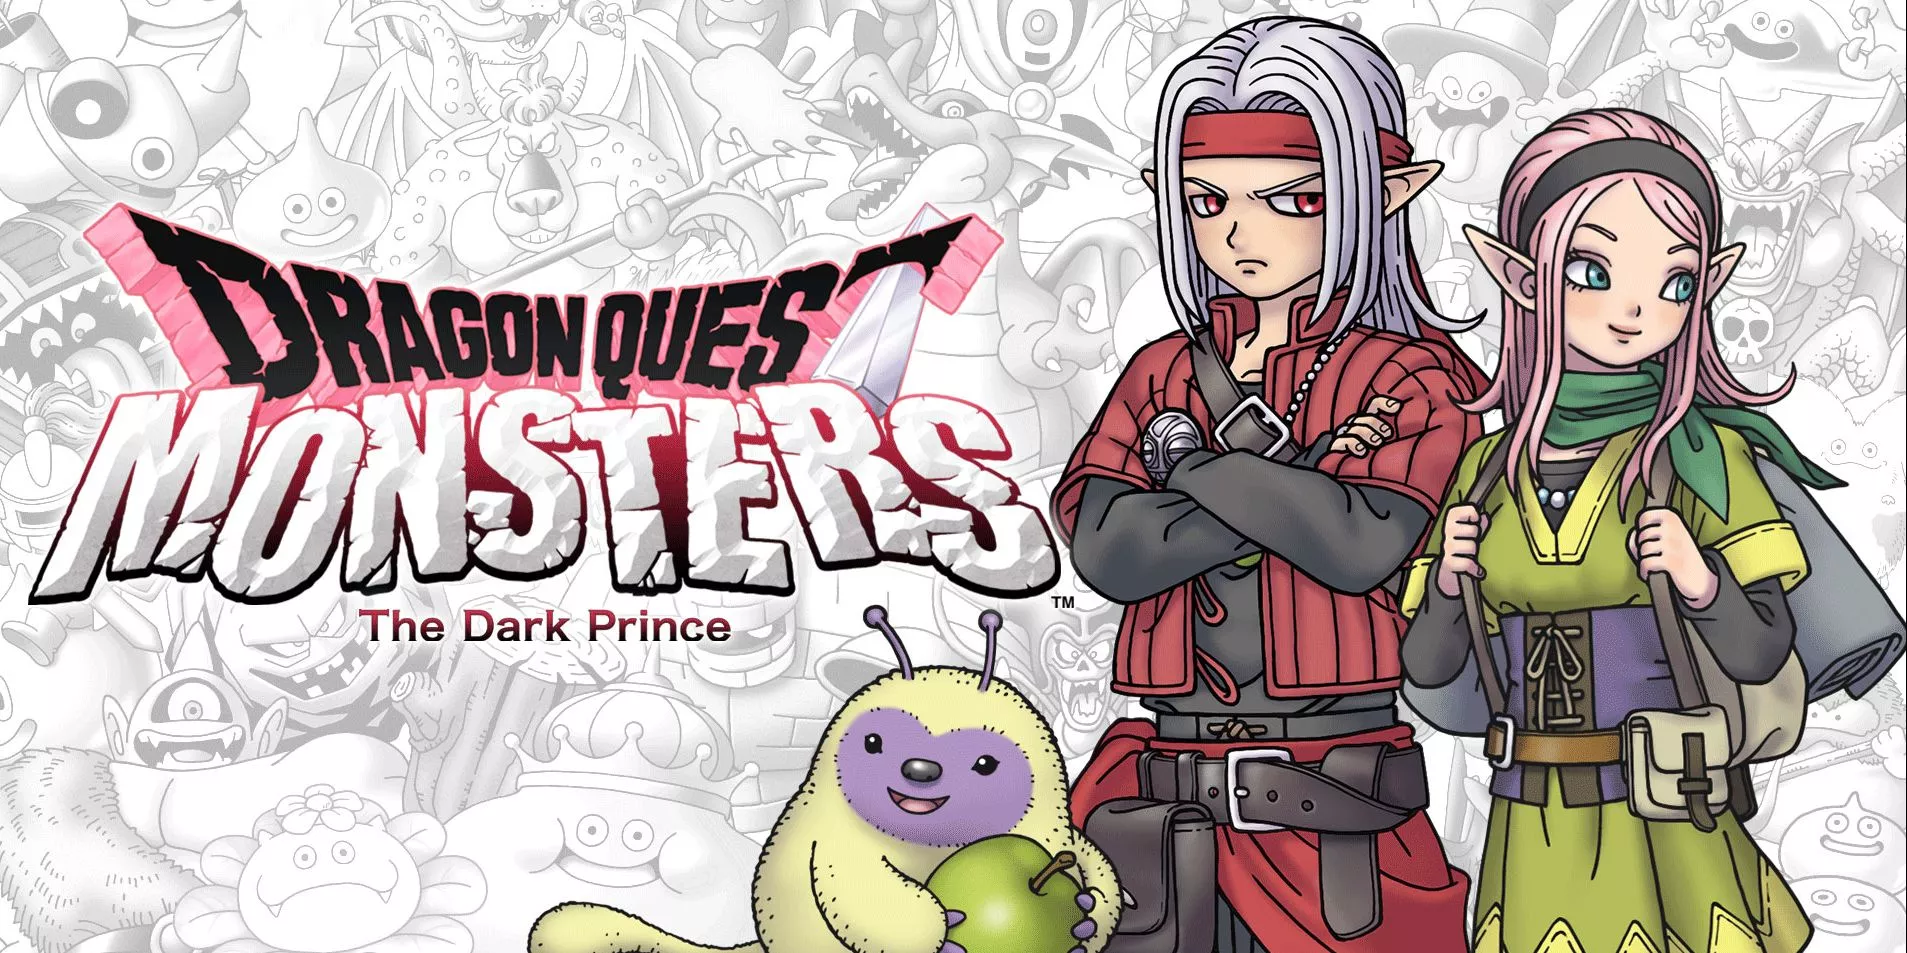 Mit der Dragon-Quest-Monsters-Reihe soll es nach 'Der dunkle Prinz' weitergehen Heropic